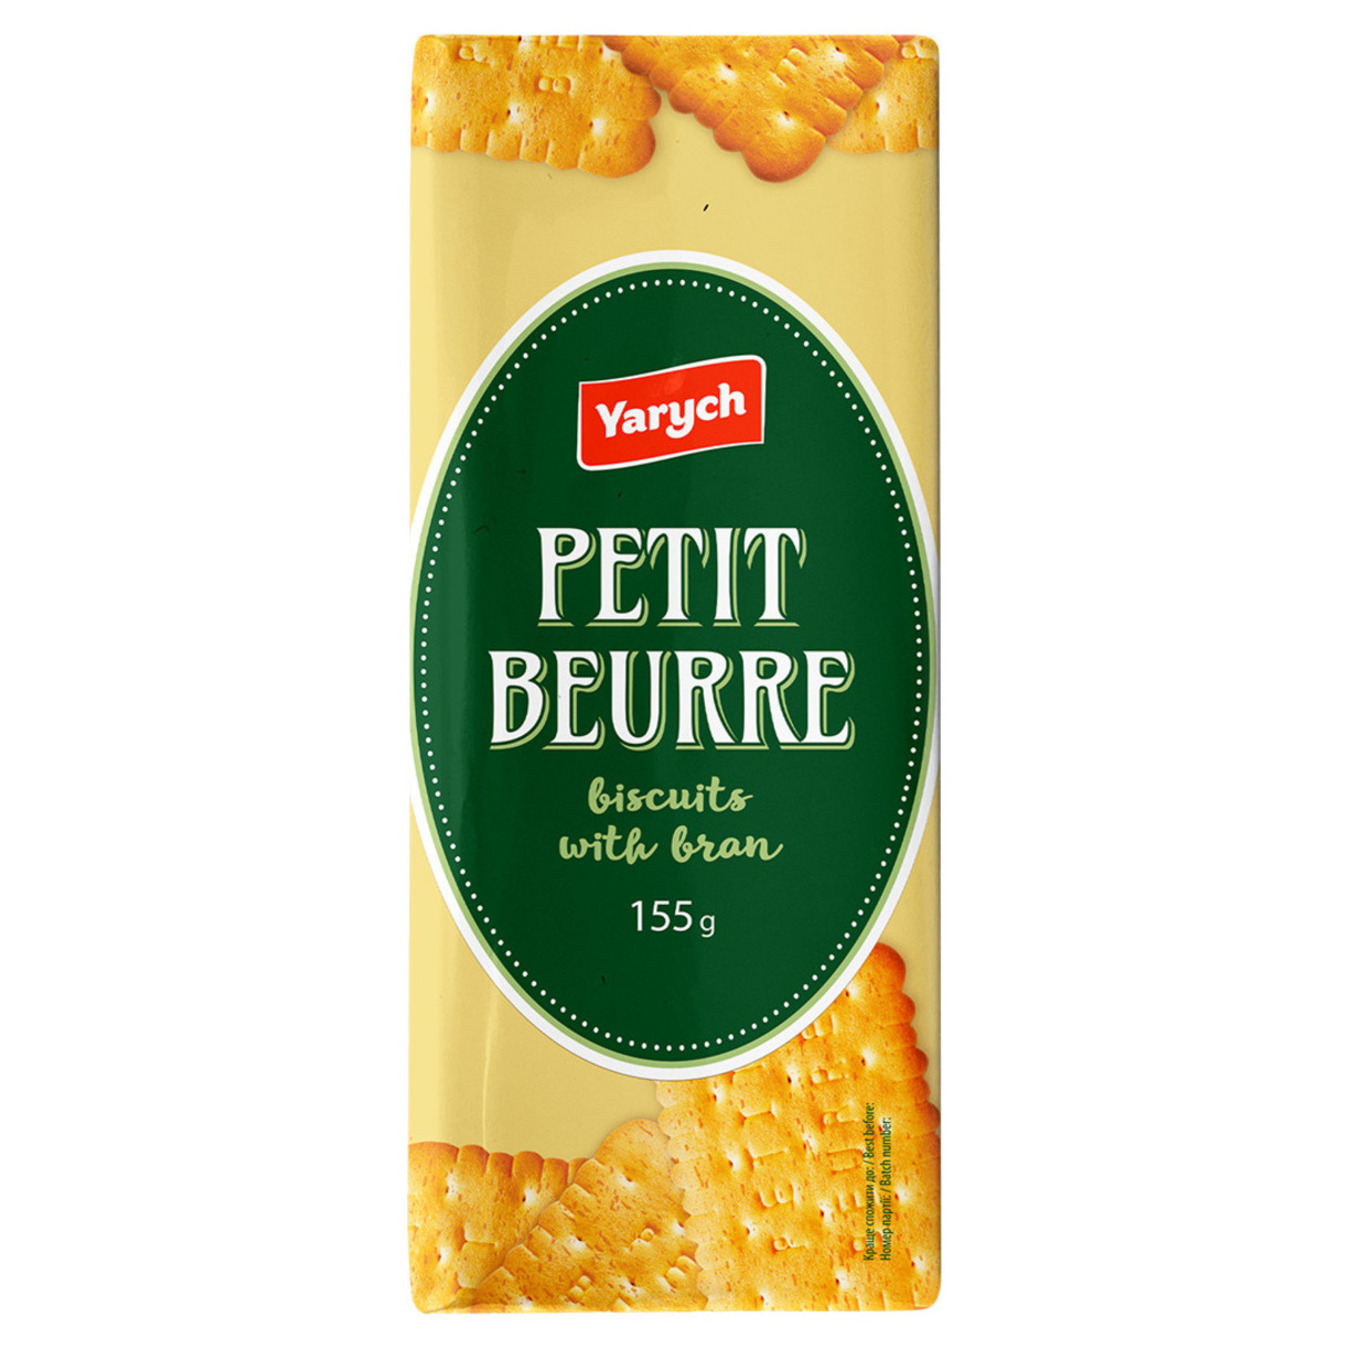 Печенье Yarych Petit Beurre с отрубями 155г 2